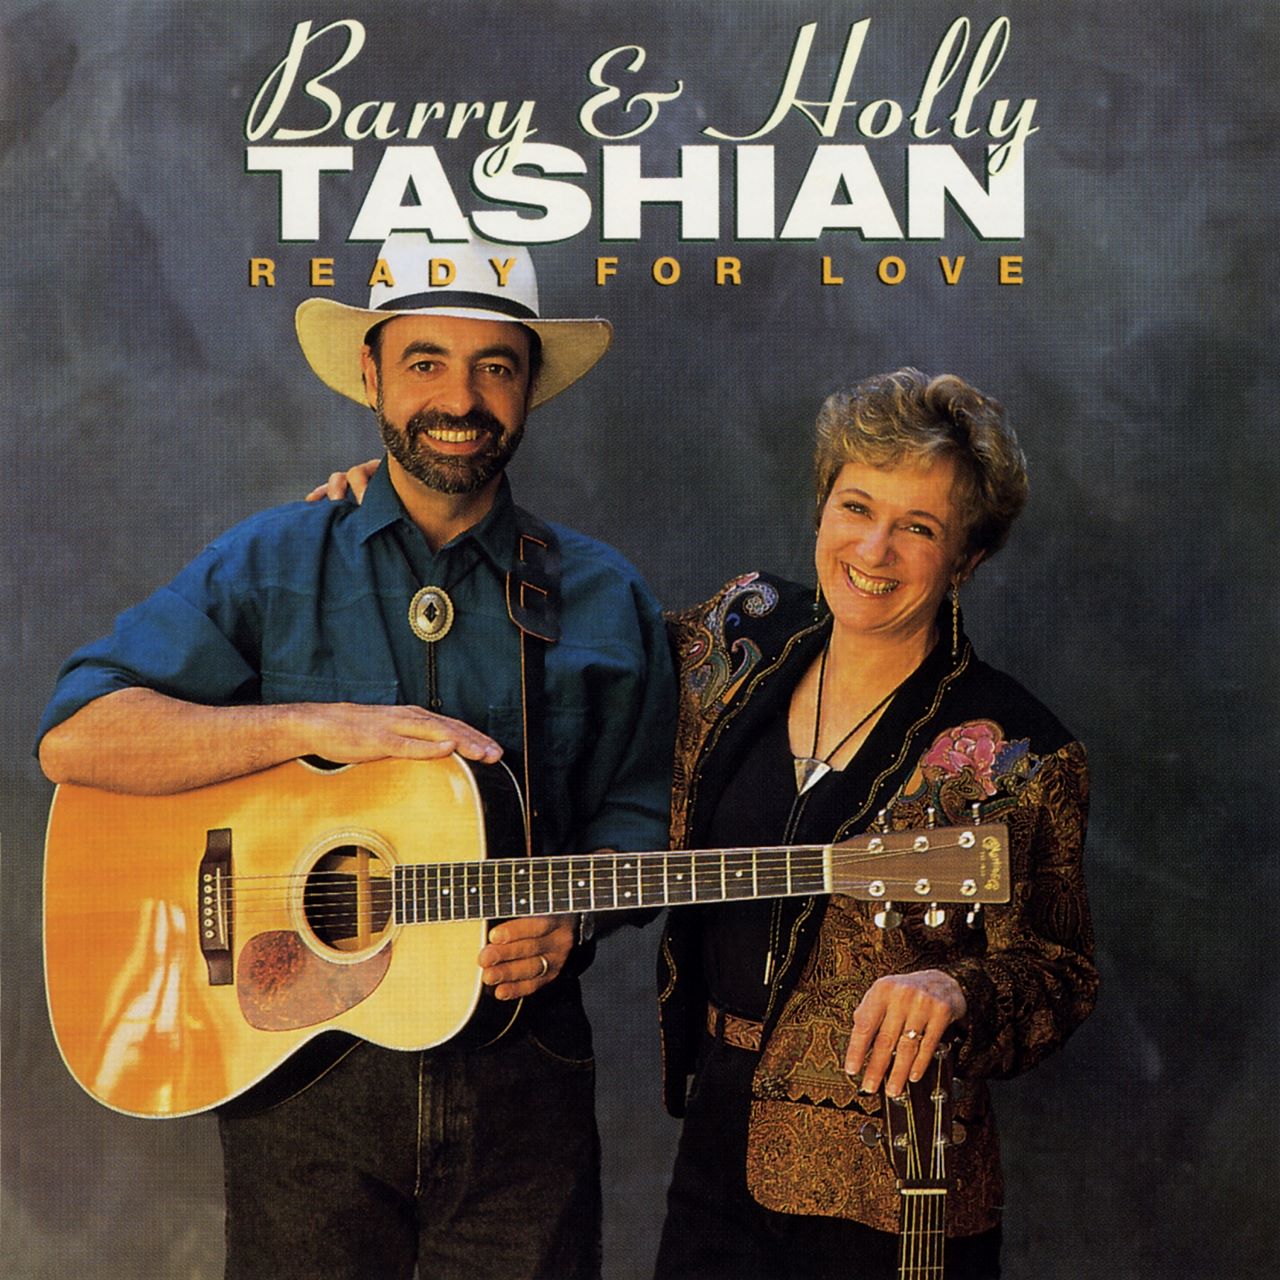 Barry & Holly Tashian - Ready For Love cover album